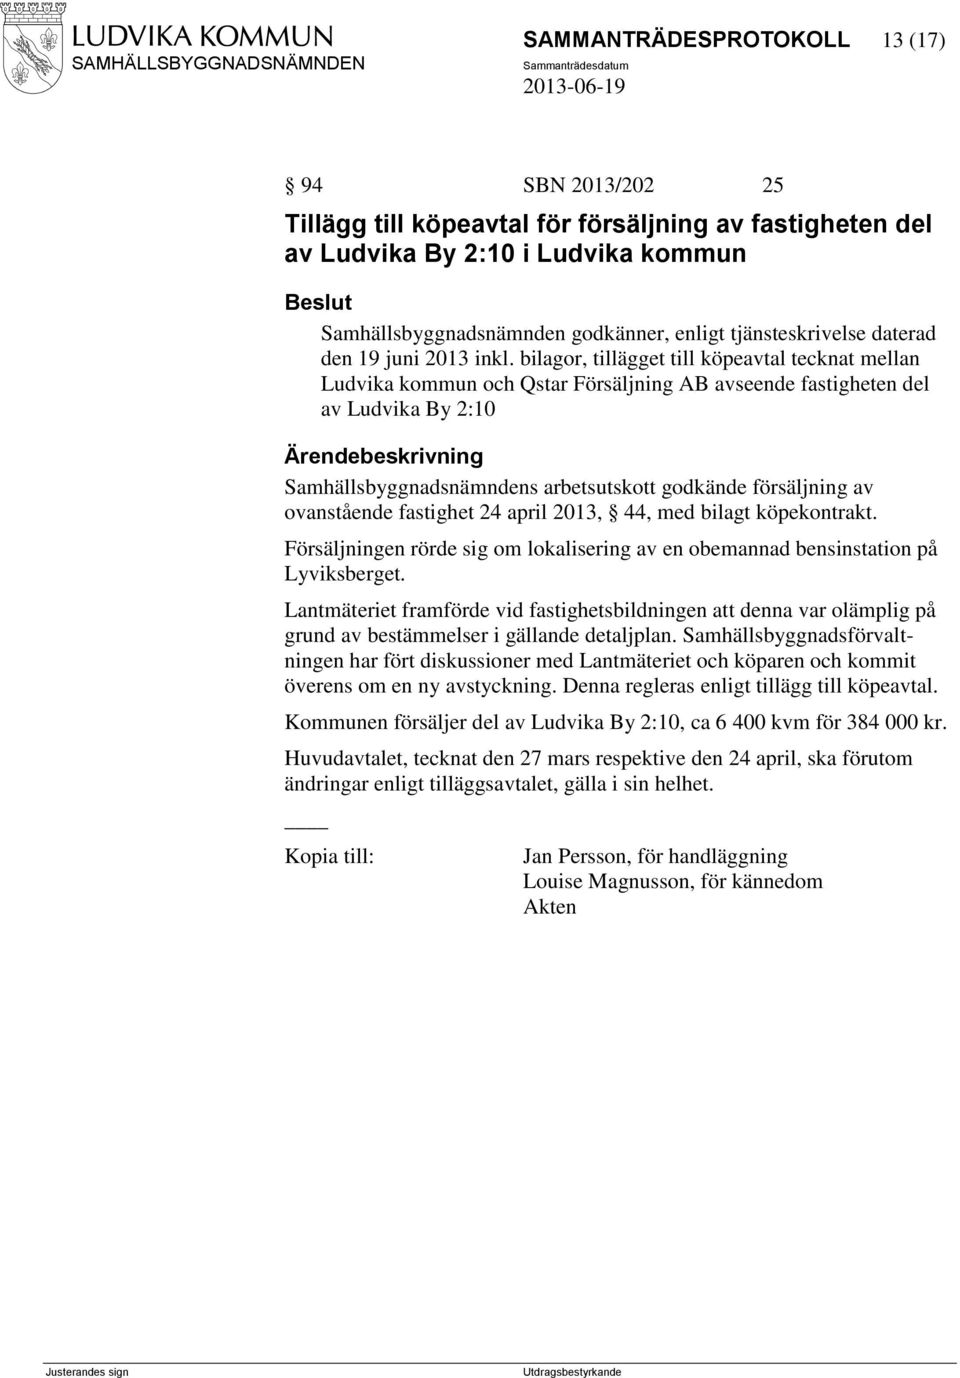 bilagor, tillägget till köpeavtal tecknat mellan Ludvika kommun och Qstar Försäljning AB avseende fastigheten del av Ludvika By 2:10 Samhällsbyggnadsnämndens arbetsutskott godkände försäljning av